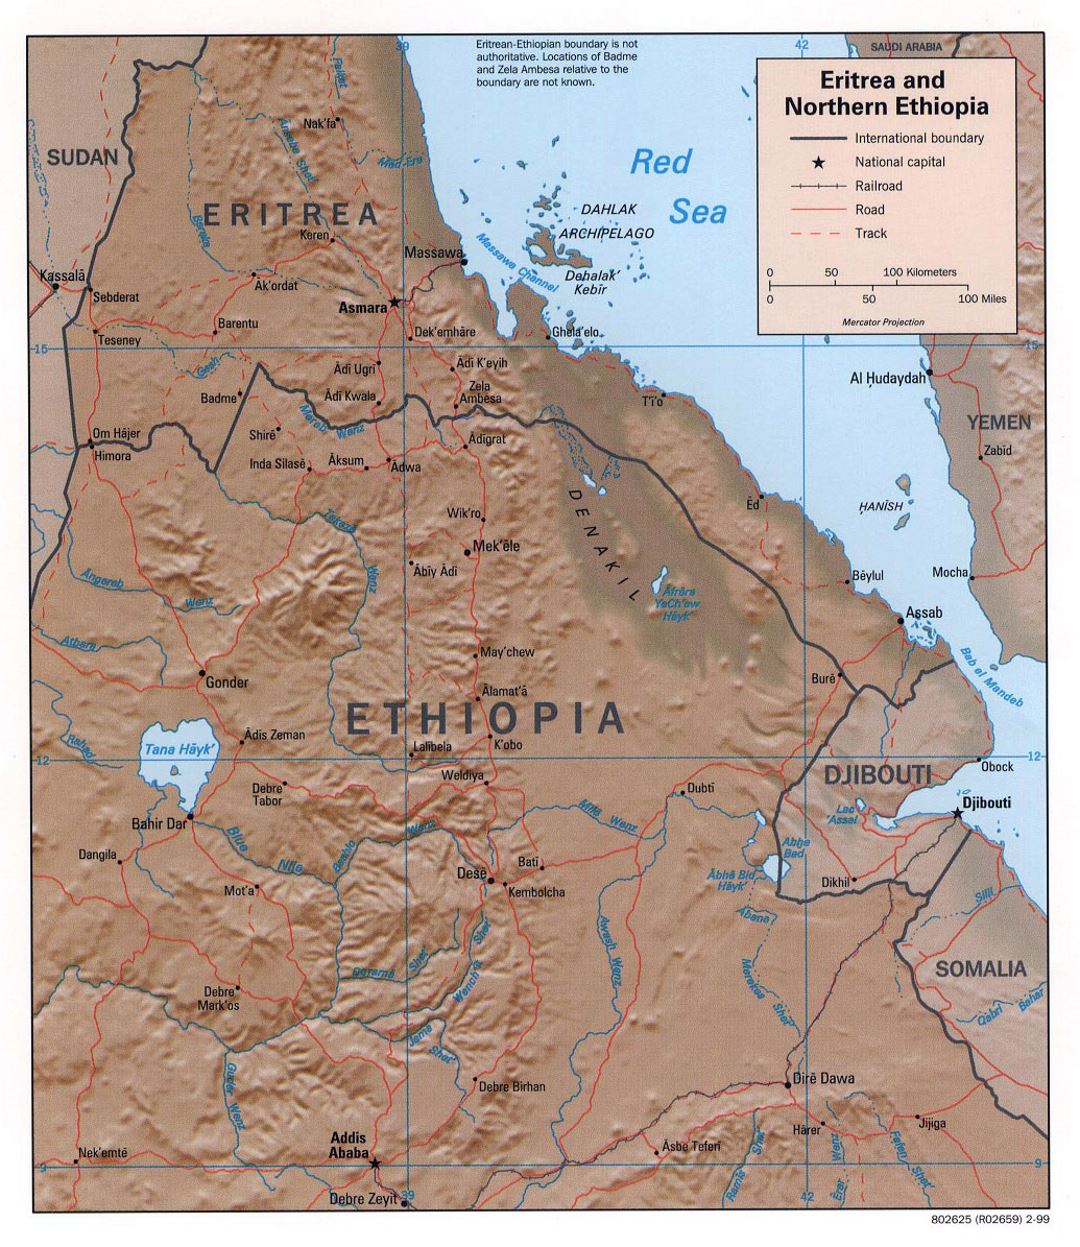 Детальная политическая карта Эритреи и Северной Эфиопии с рельефом, дорогами, железными дорогами и крупными городами - 1999